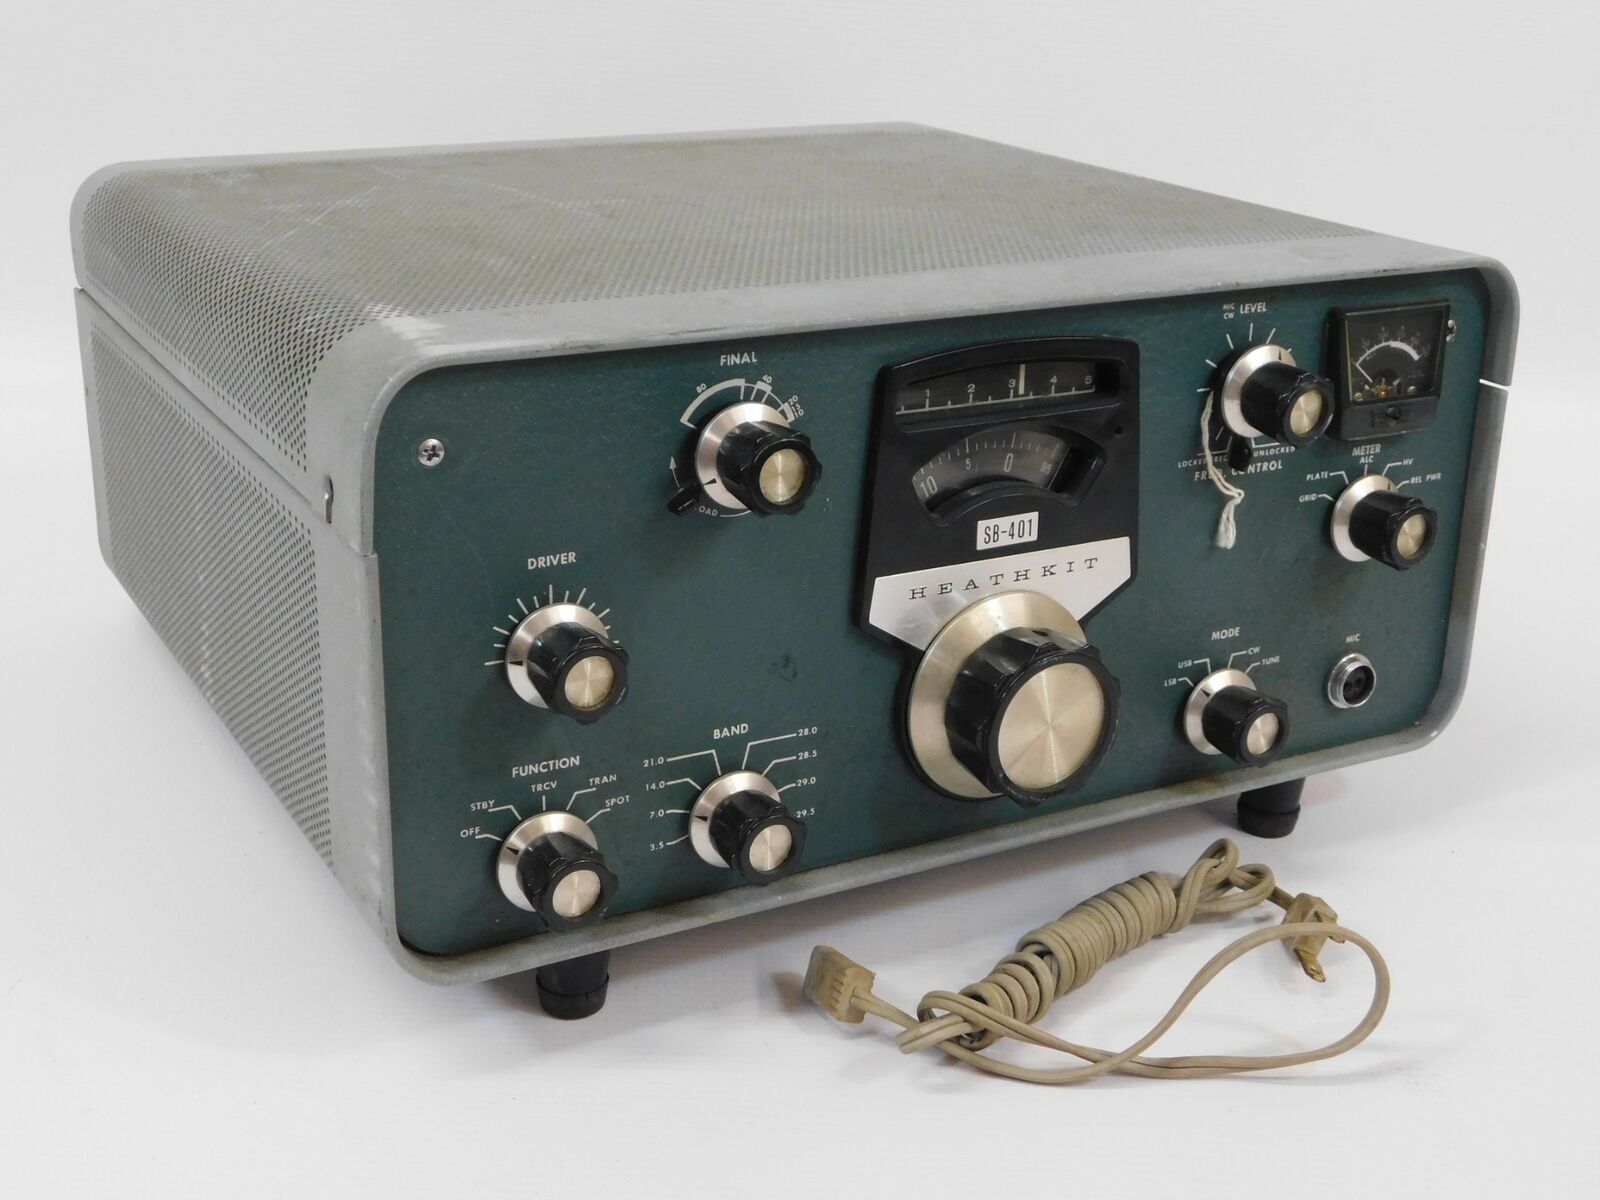 Heathkit Sb-401 Ham Radio Transmitter W/ Filter (untested, For Restoration)